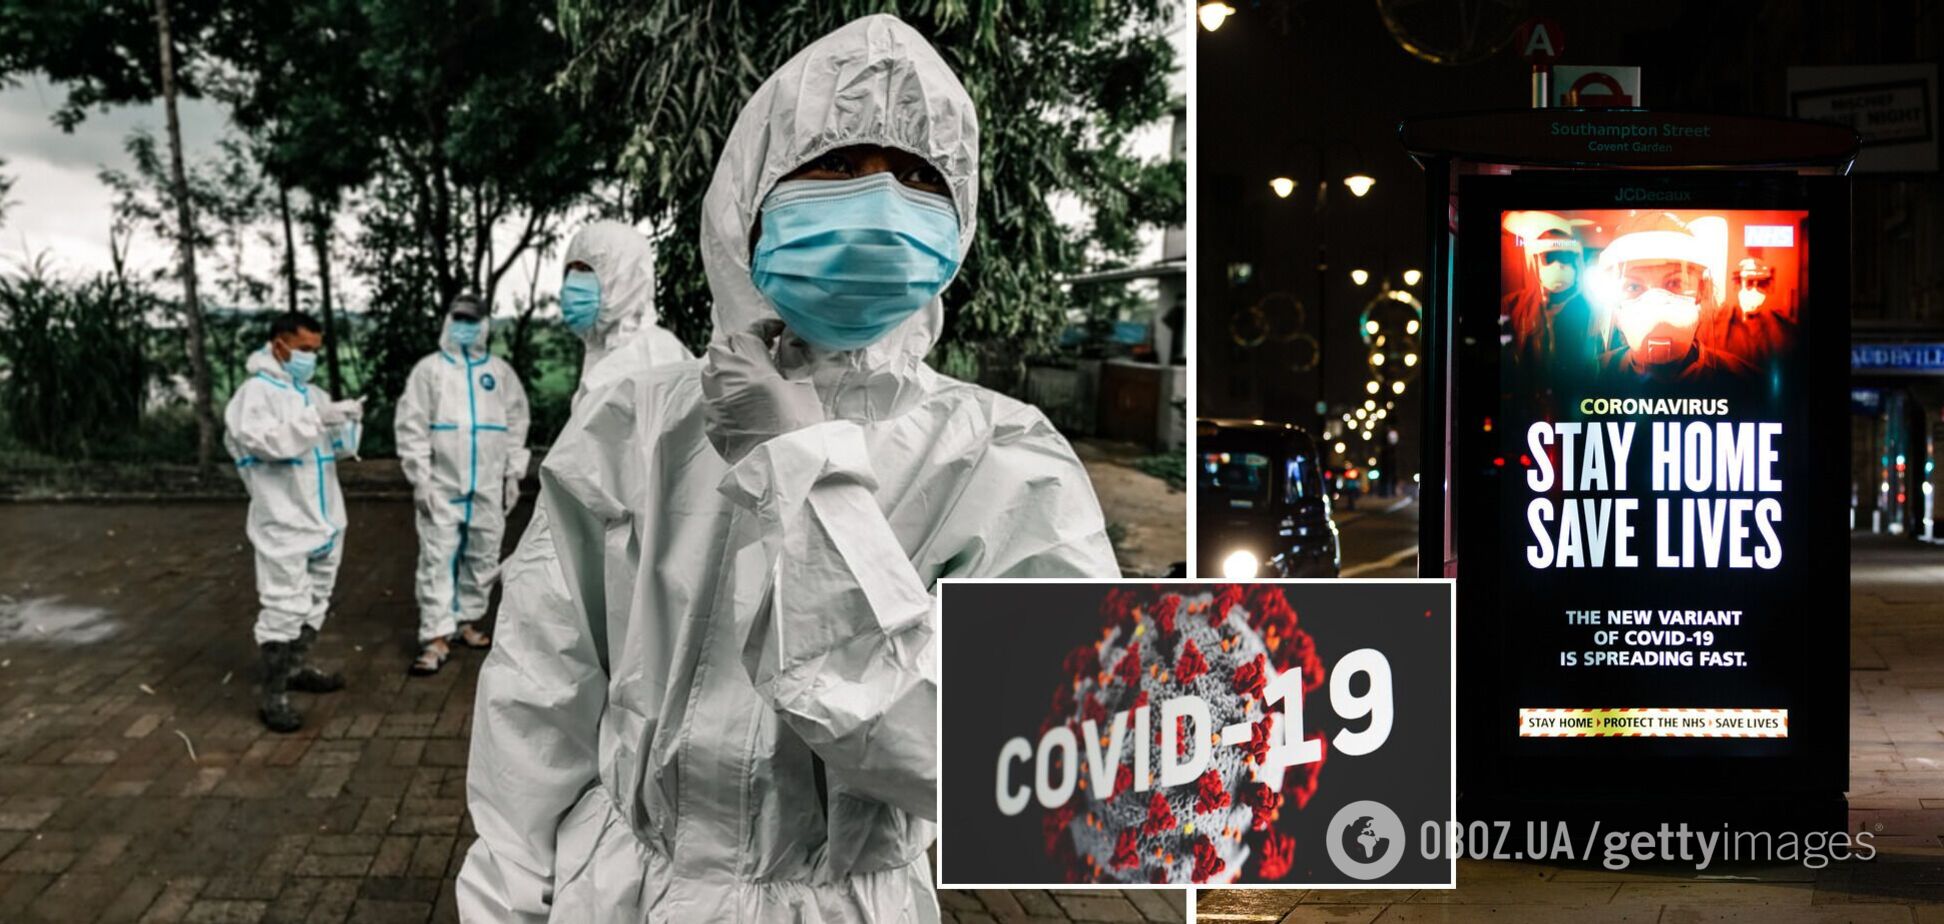 Локдаун для непривитых в Германии и новое лекарство от COVID-19. Хроника коронавируса на 2 декабря